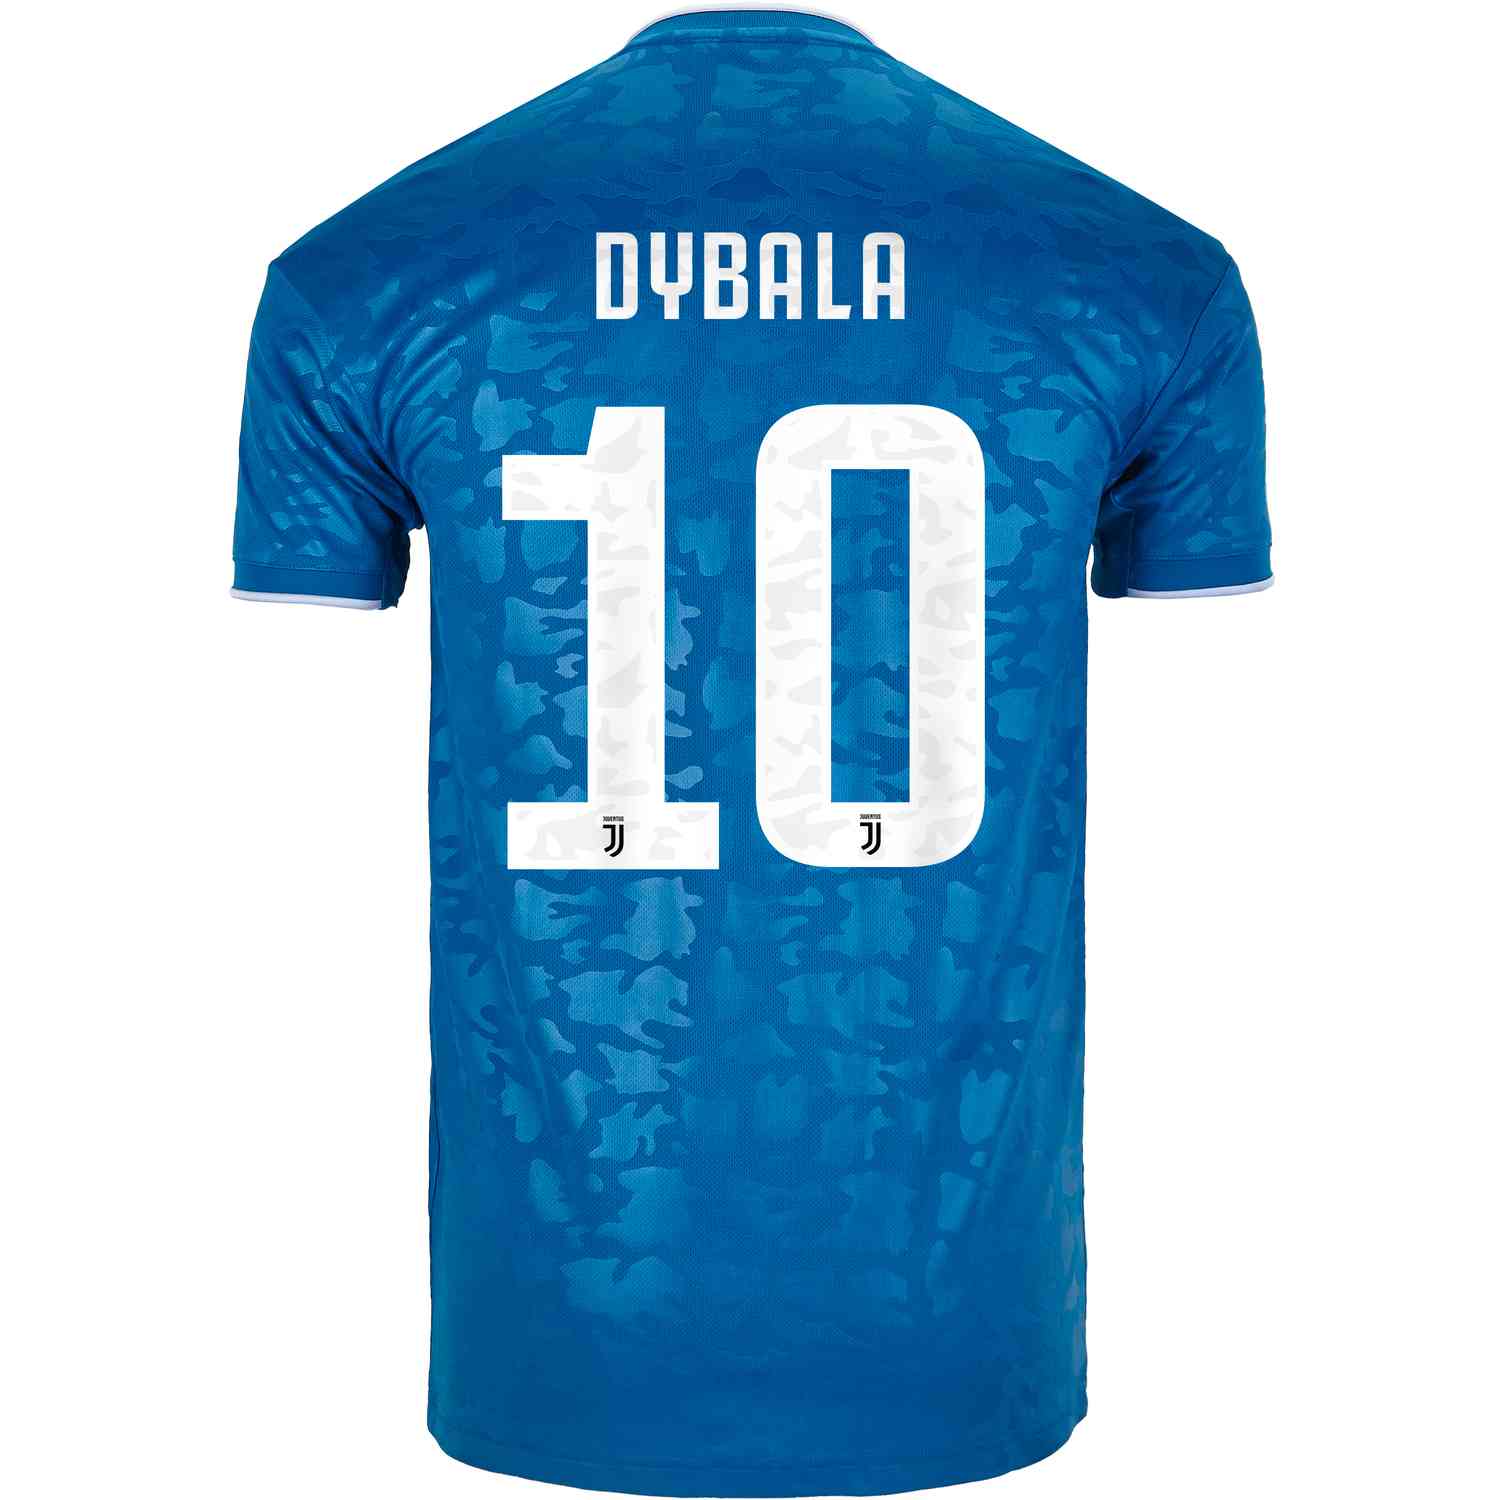 paulo dybala youth jersey